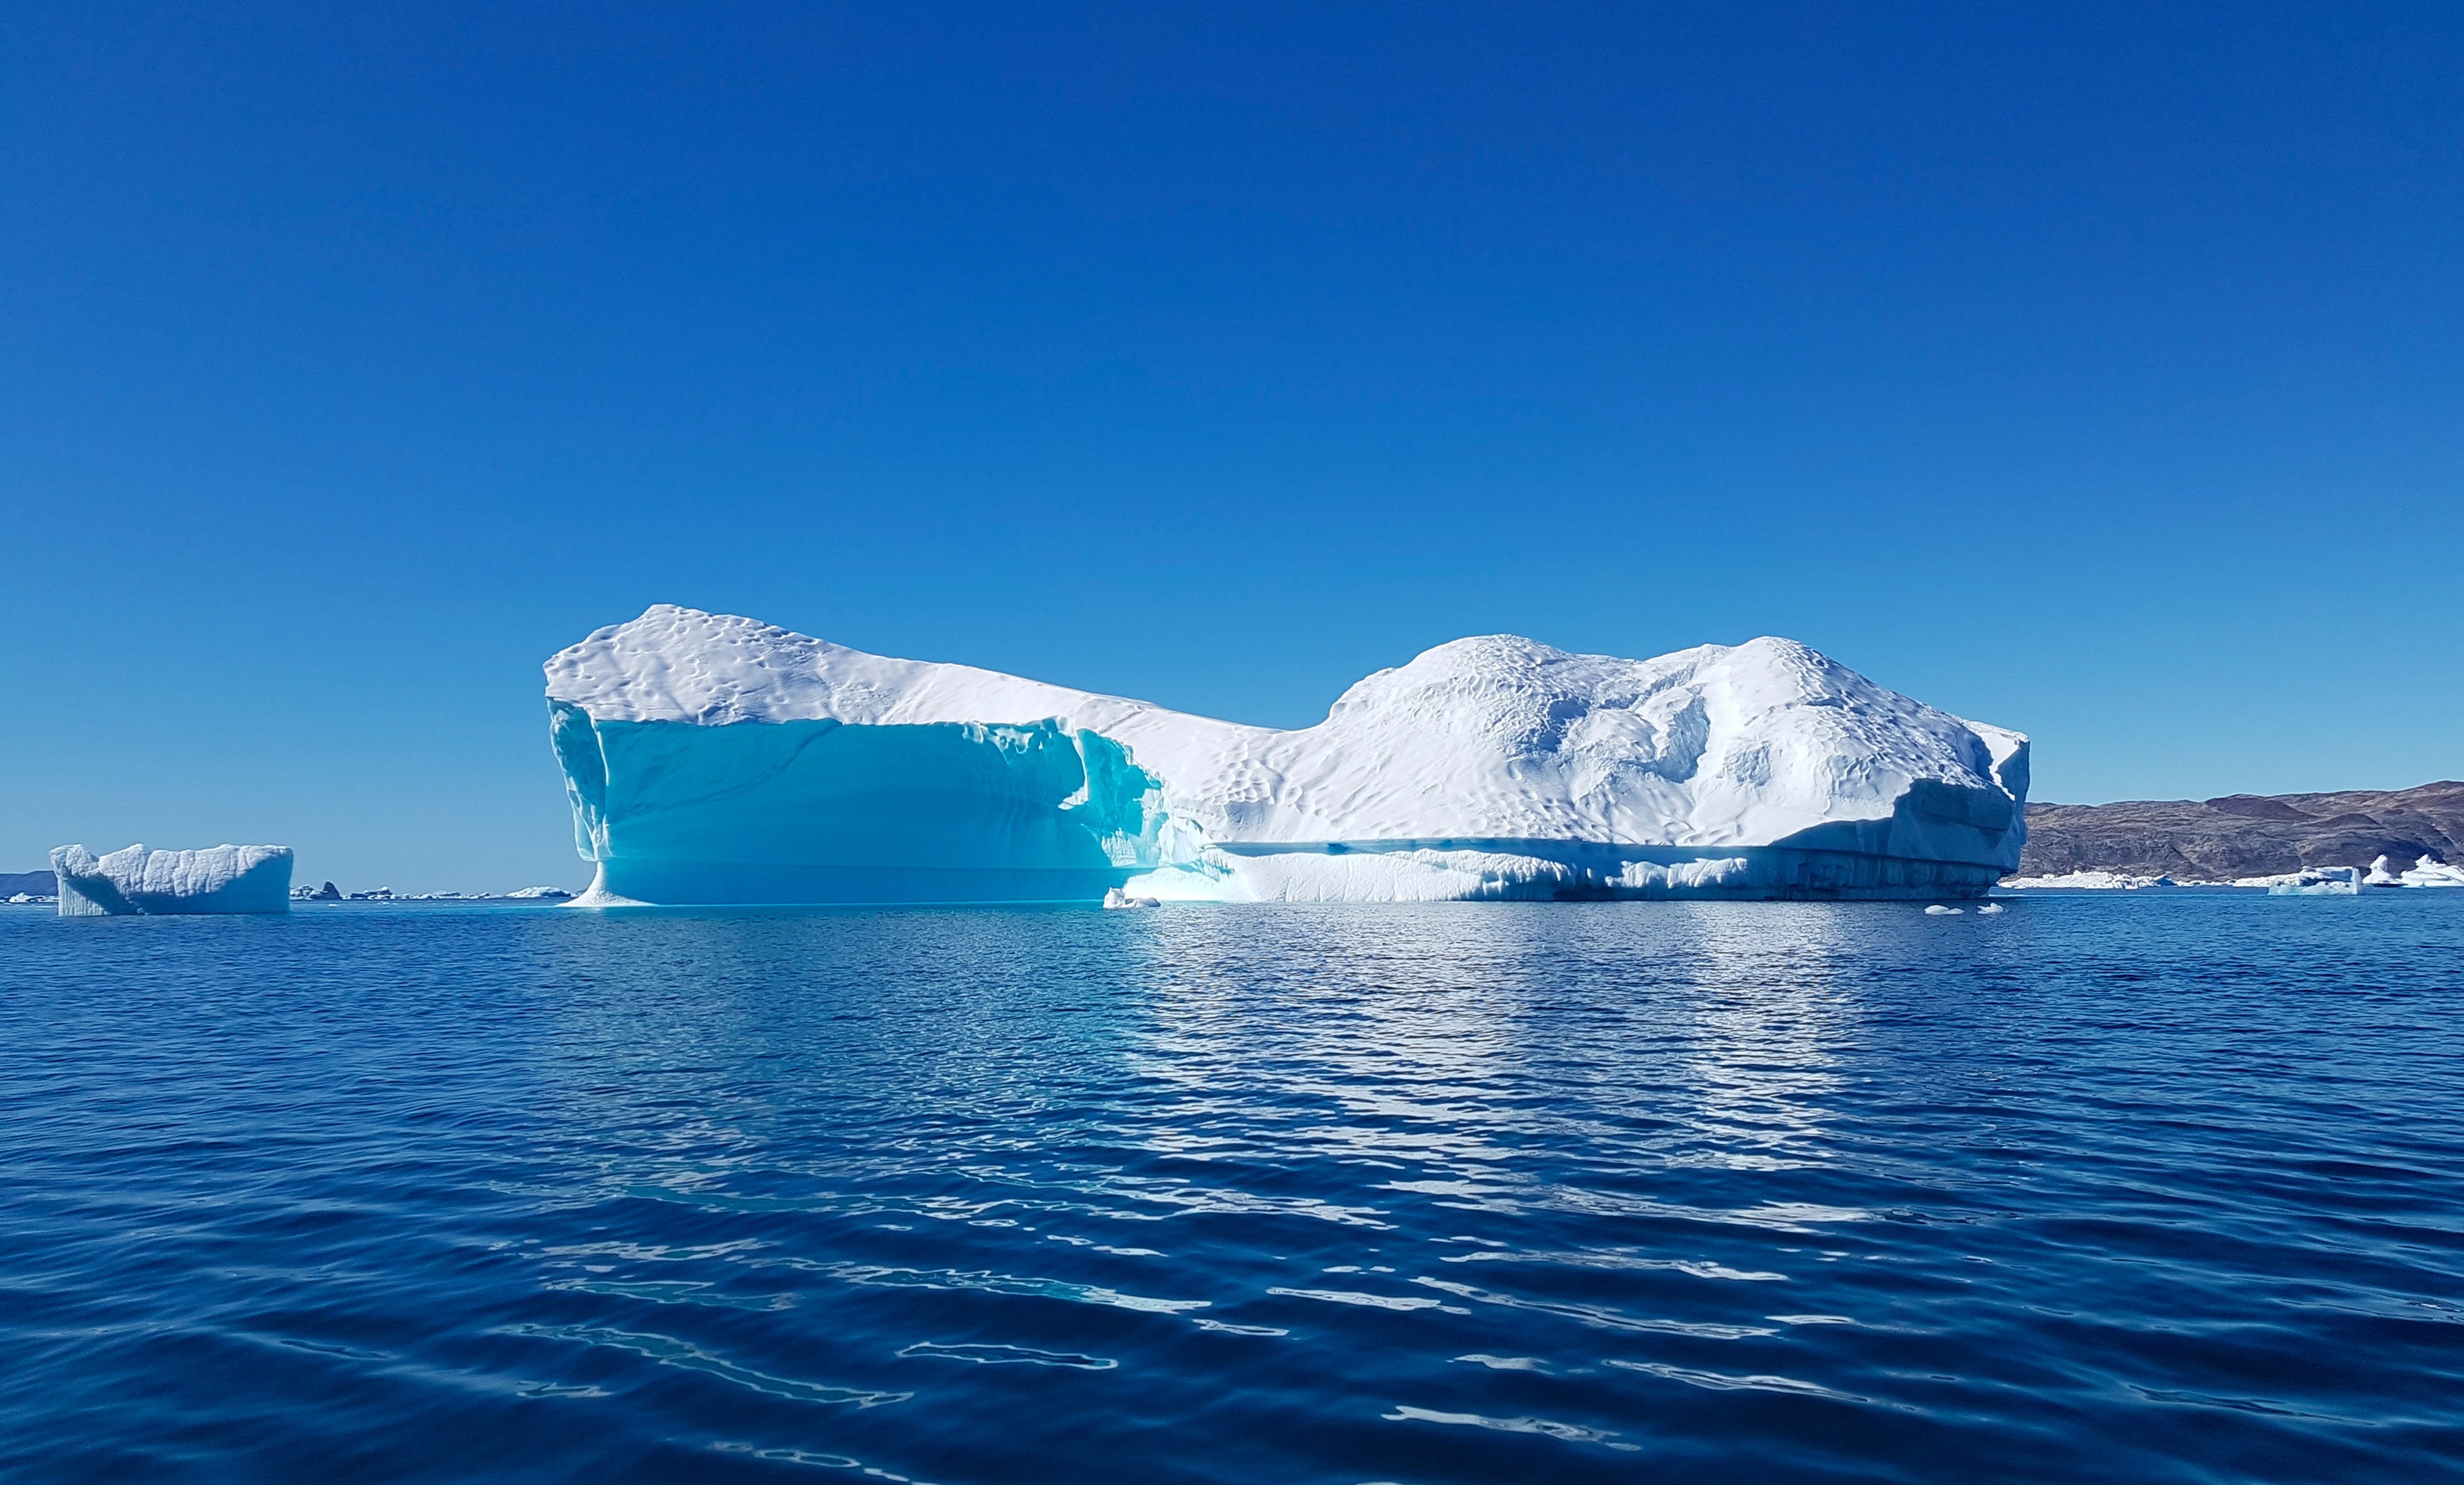 Антарктида Гренландия Арктика Северный Ледовитый океан. Ледовитый океан Айсберг. Северный Ледовитый океан паковый лед. Айсберг под водой. Айсберг в океане текст